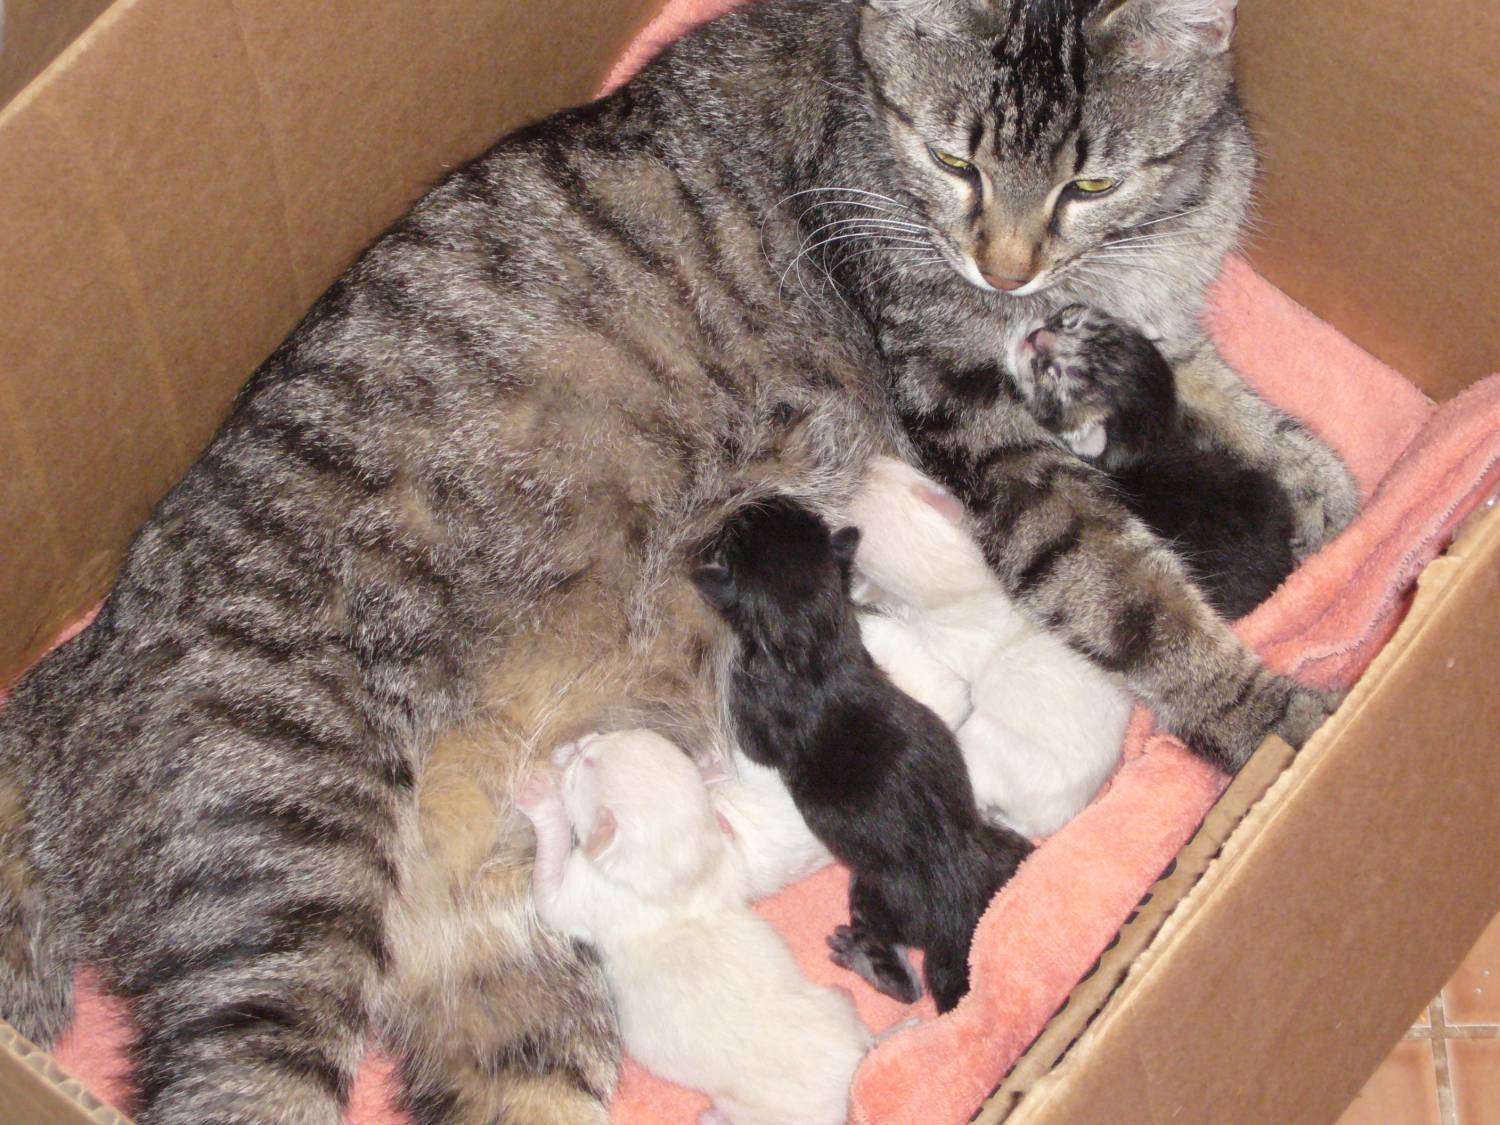 Сколько котят кошка может родить в первый раз и за всю жизнь, от чего зависит количество малышей в помете?